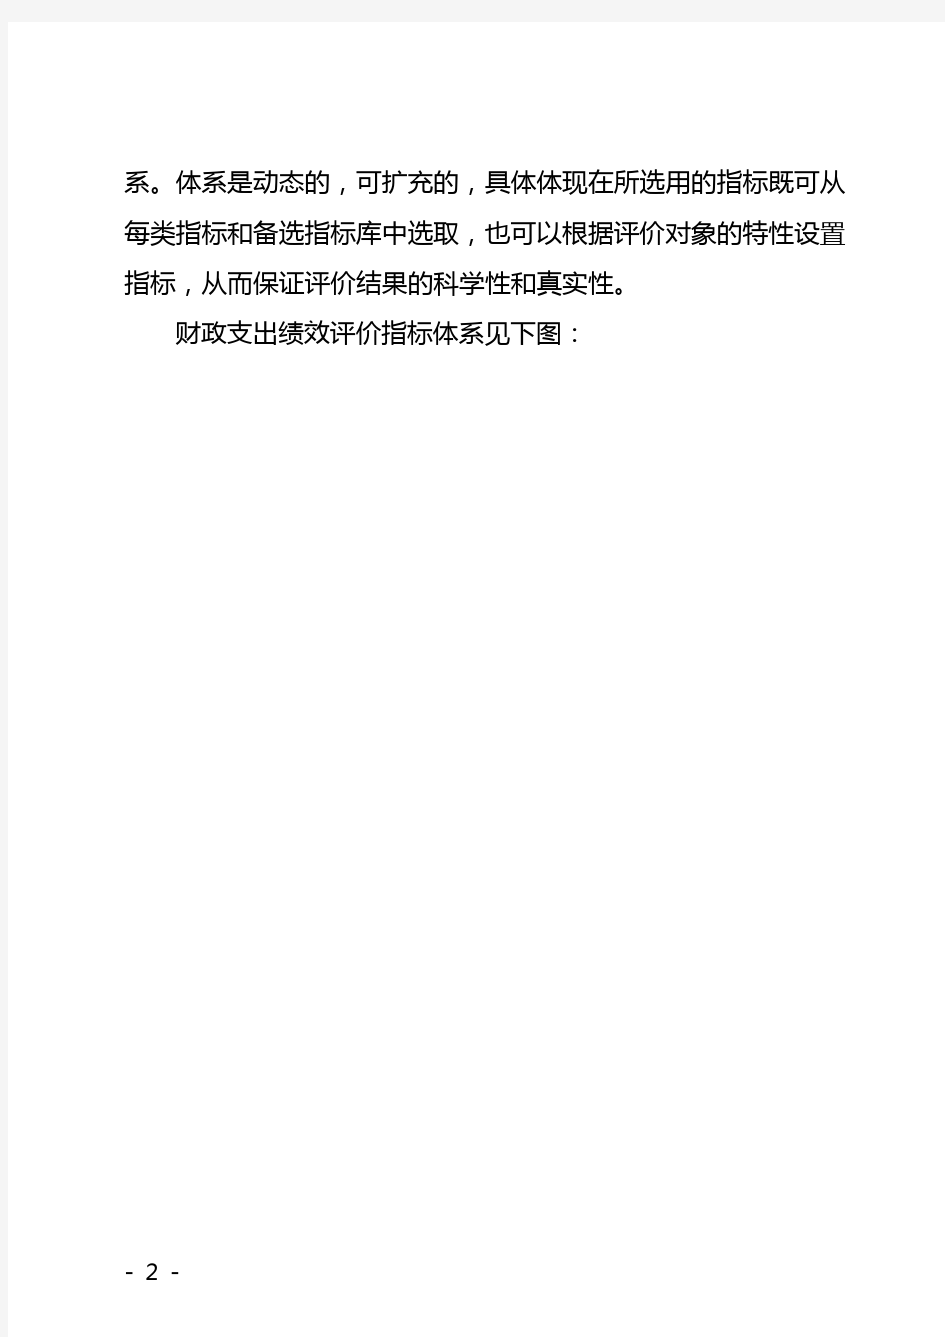 广东省财政支出绩效评价指标体系